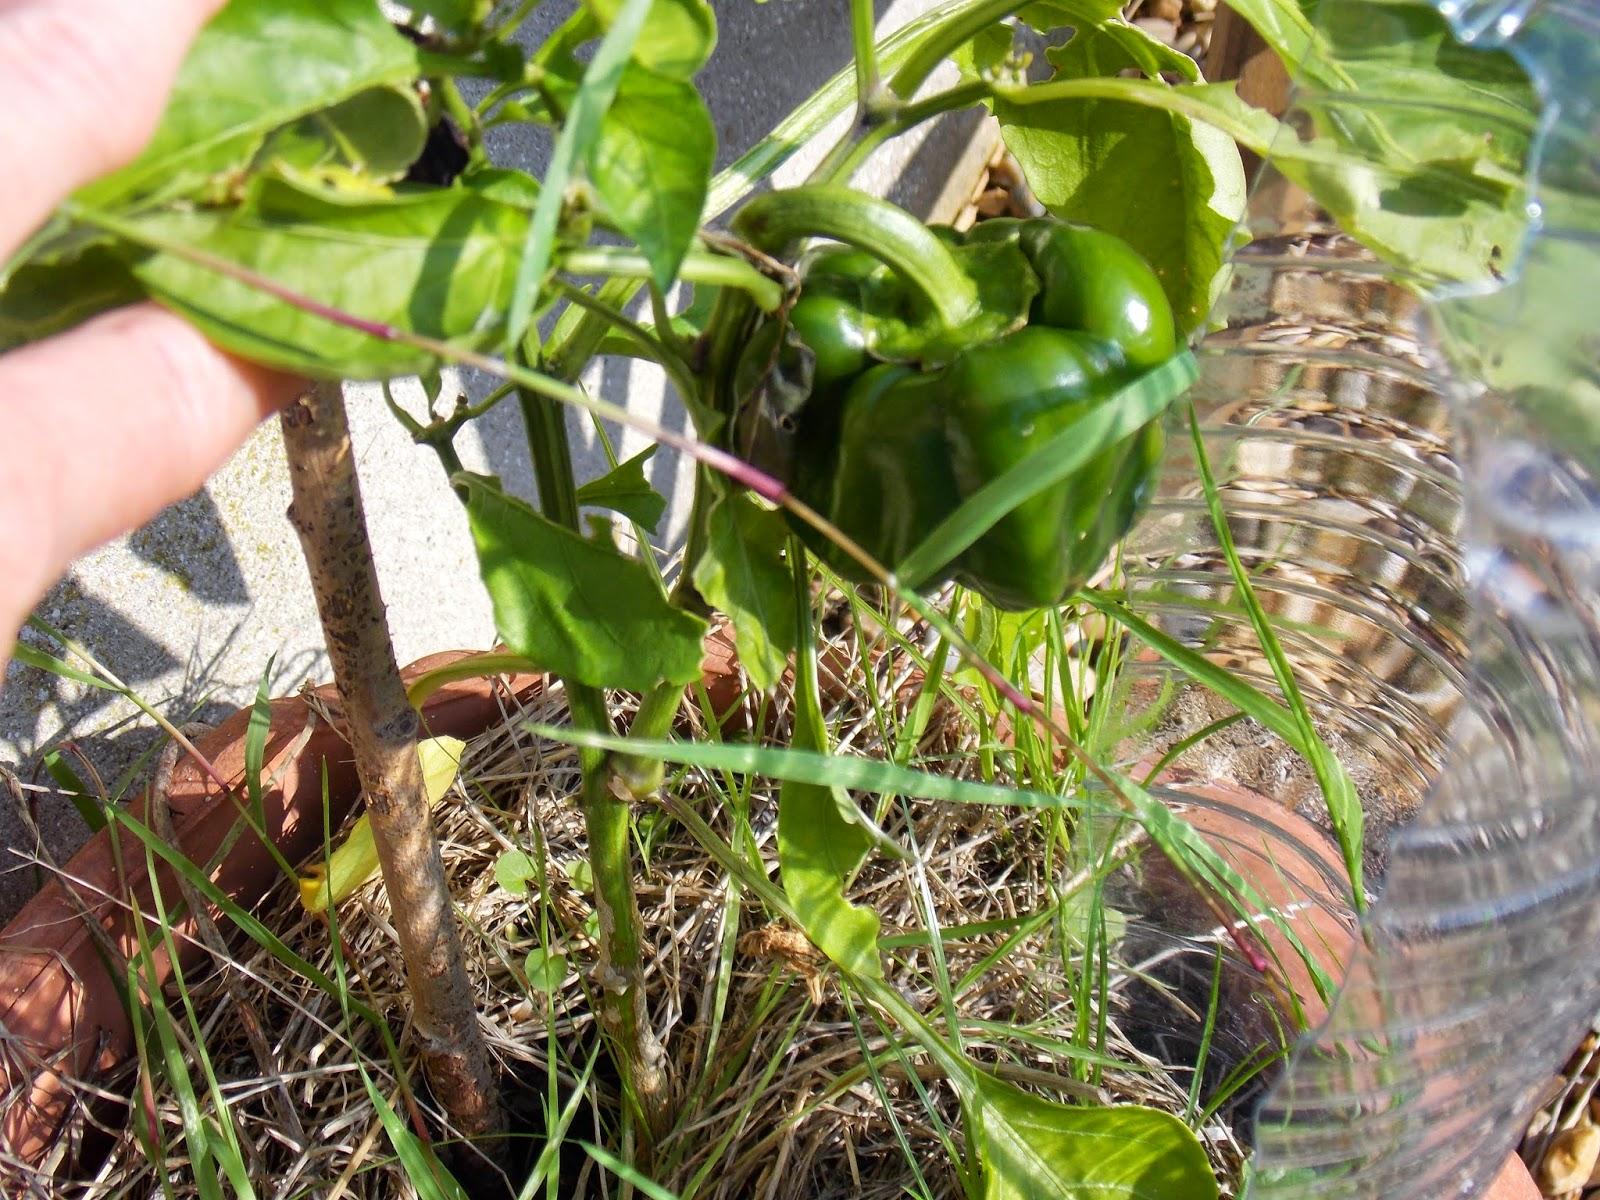 Récoltes sur la terrasse : quelques exemples